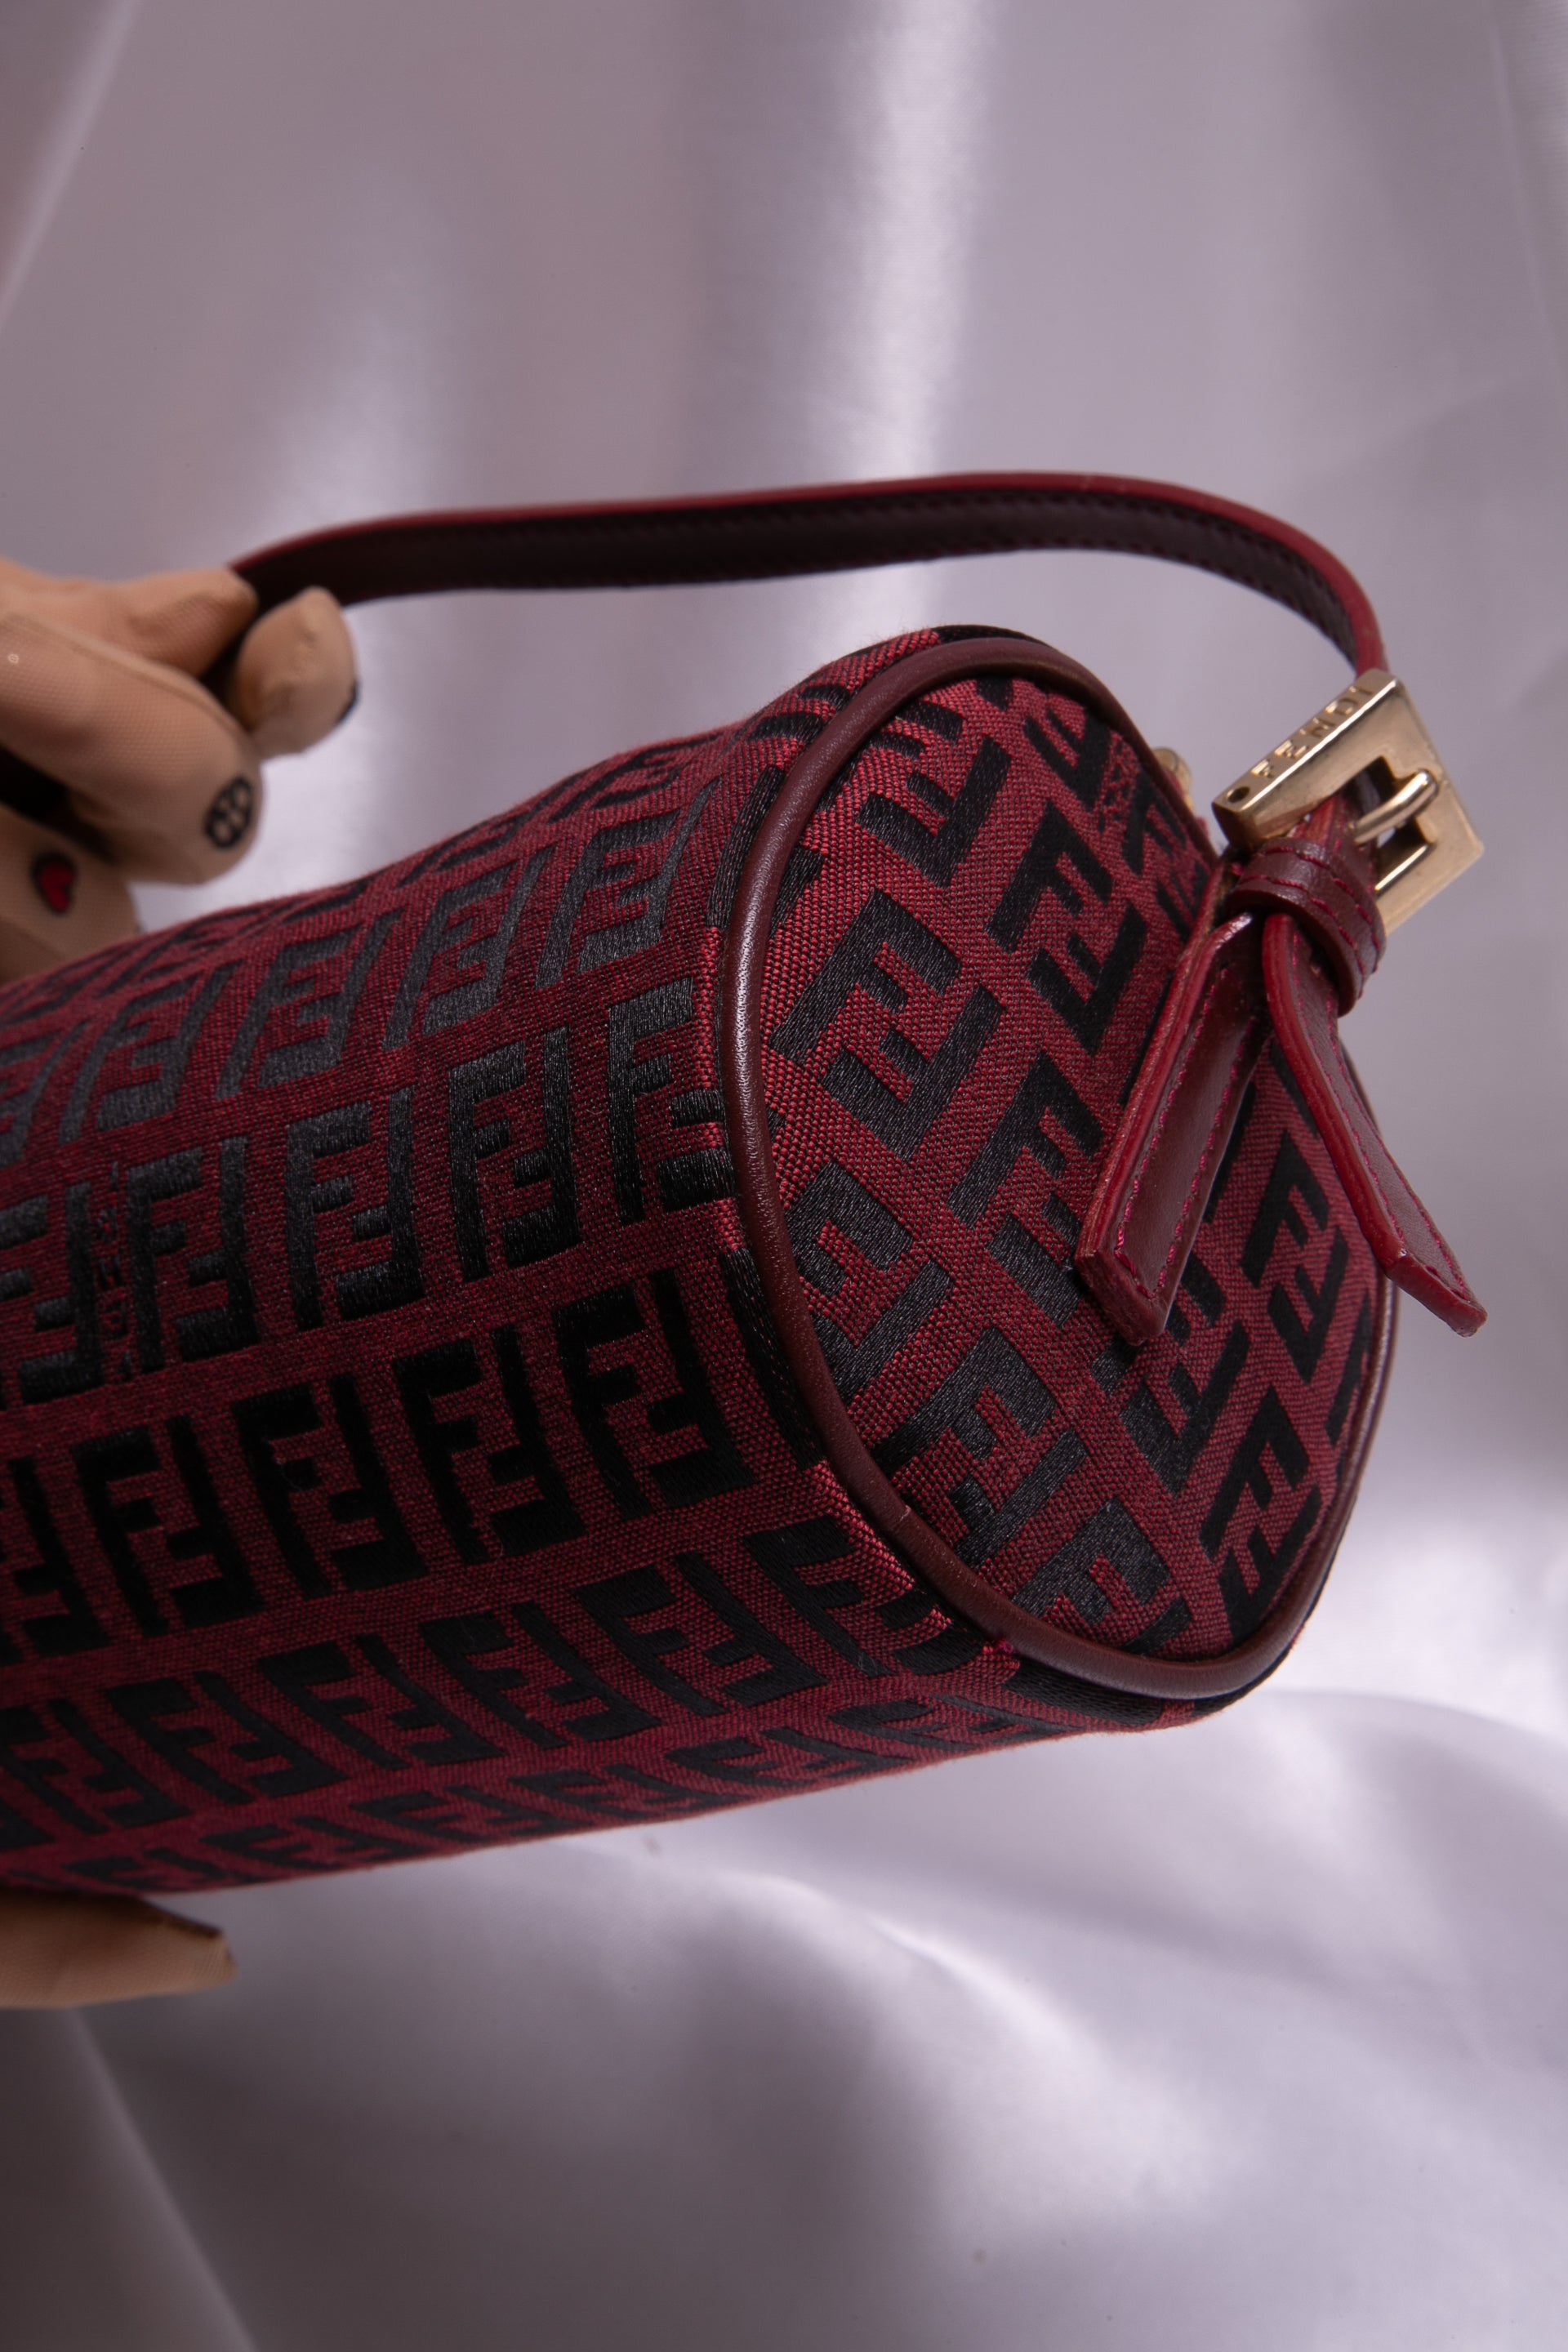 Fendi Red Bags - 40 For Sale on 1stDibs | red fendi bag, fendi bag red, red  fendi handbag